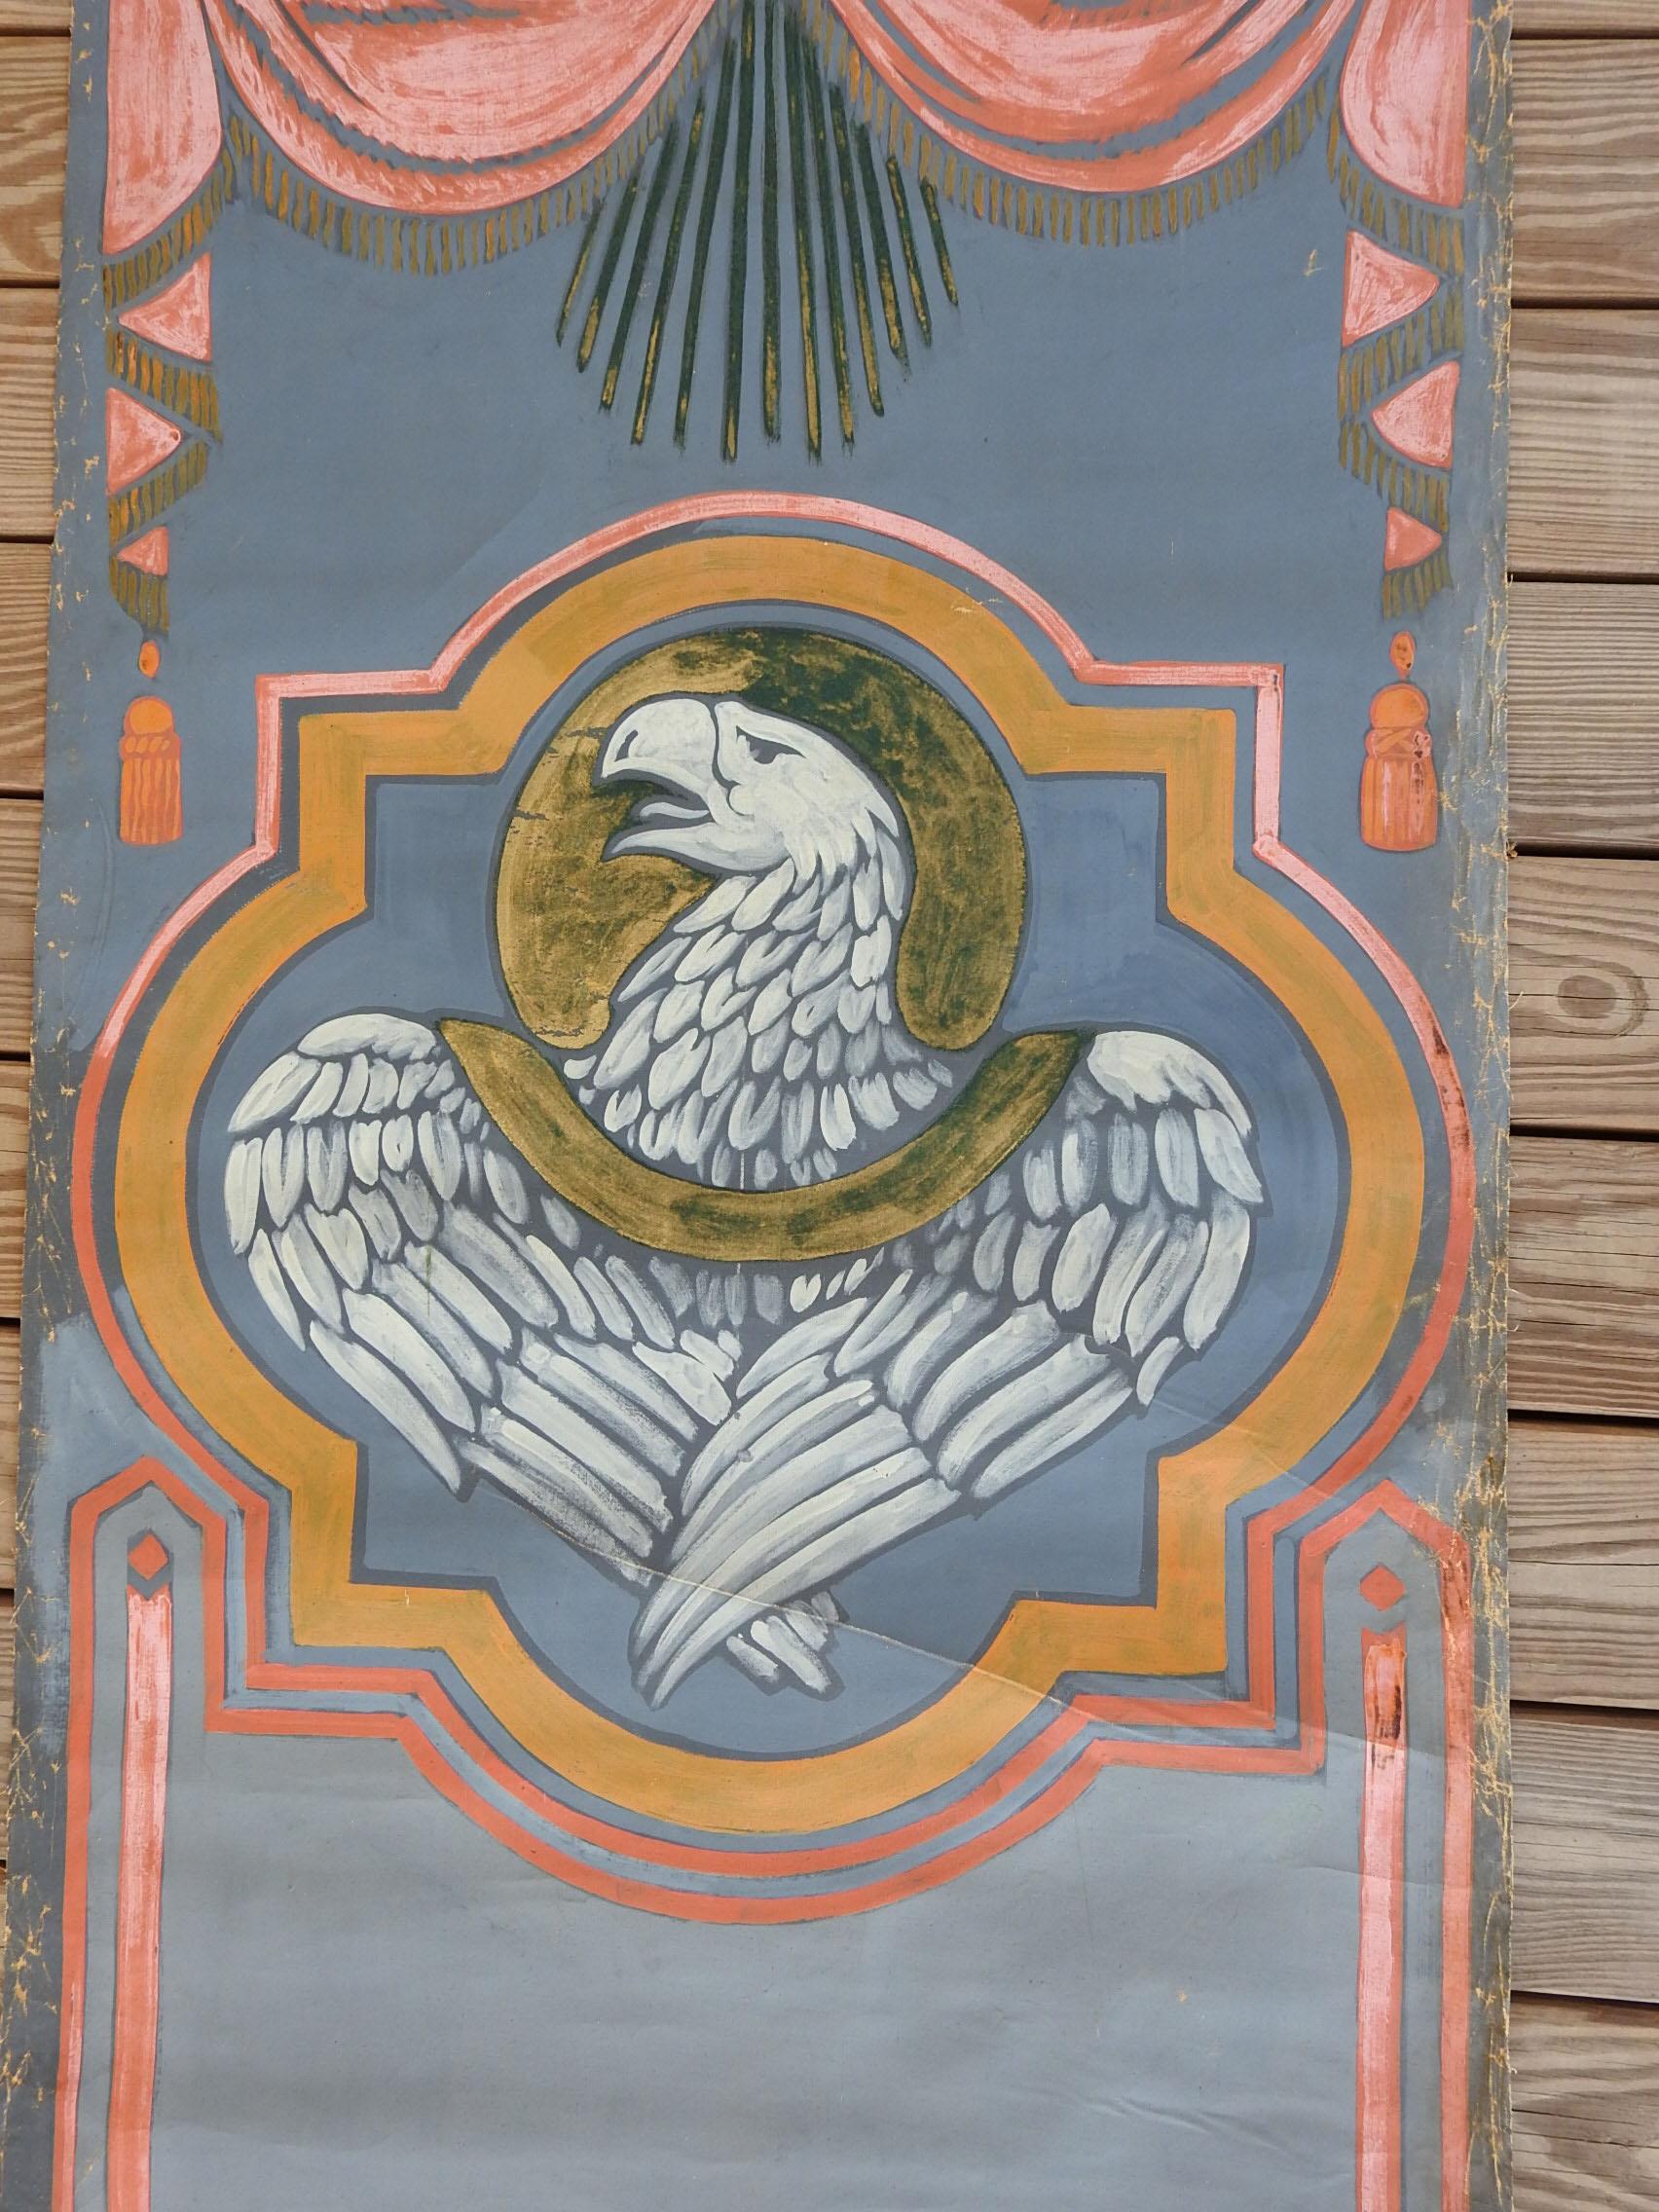 Vintage huile sur toile de l'aigle de St. John par Geneva Flore Hart Fell (1906 - 2008) Texas. Aigle bleu, rose et or à l'intérieur d'un quadrilatère avec des guirlandes au sommet sur une toile plate, probablement pour un échantillon de décoration